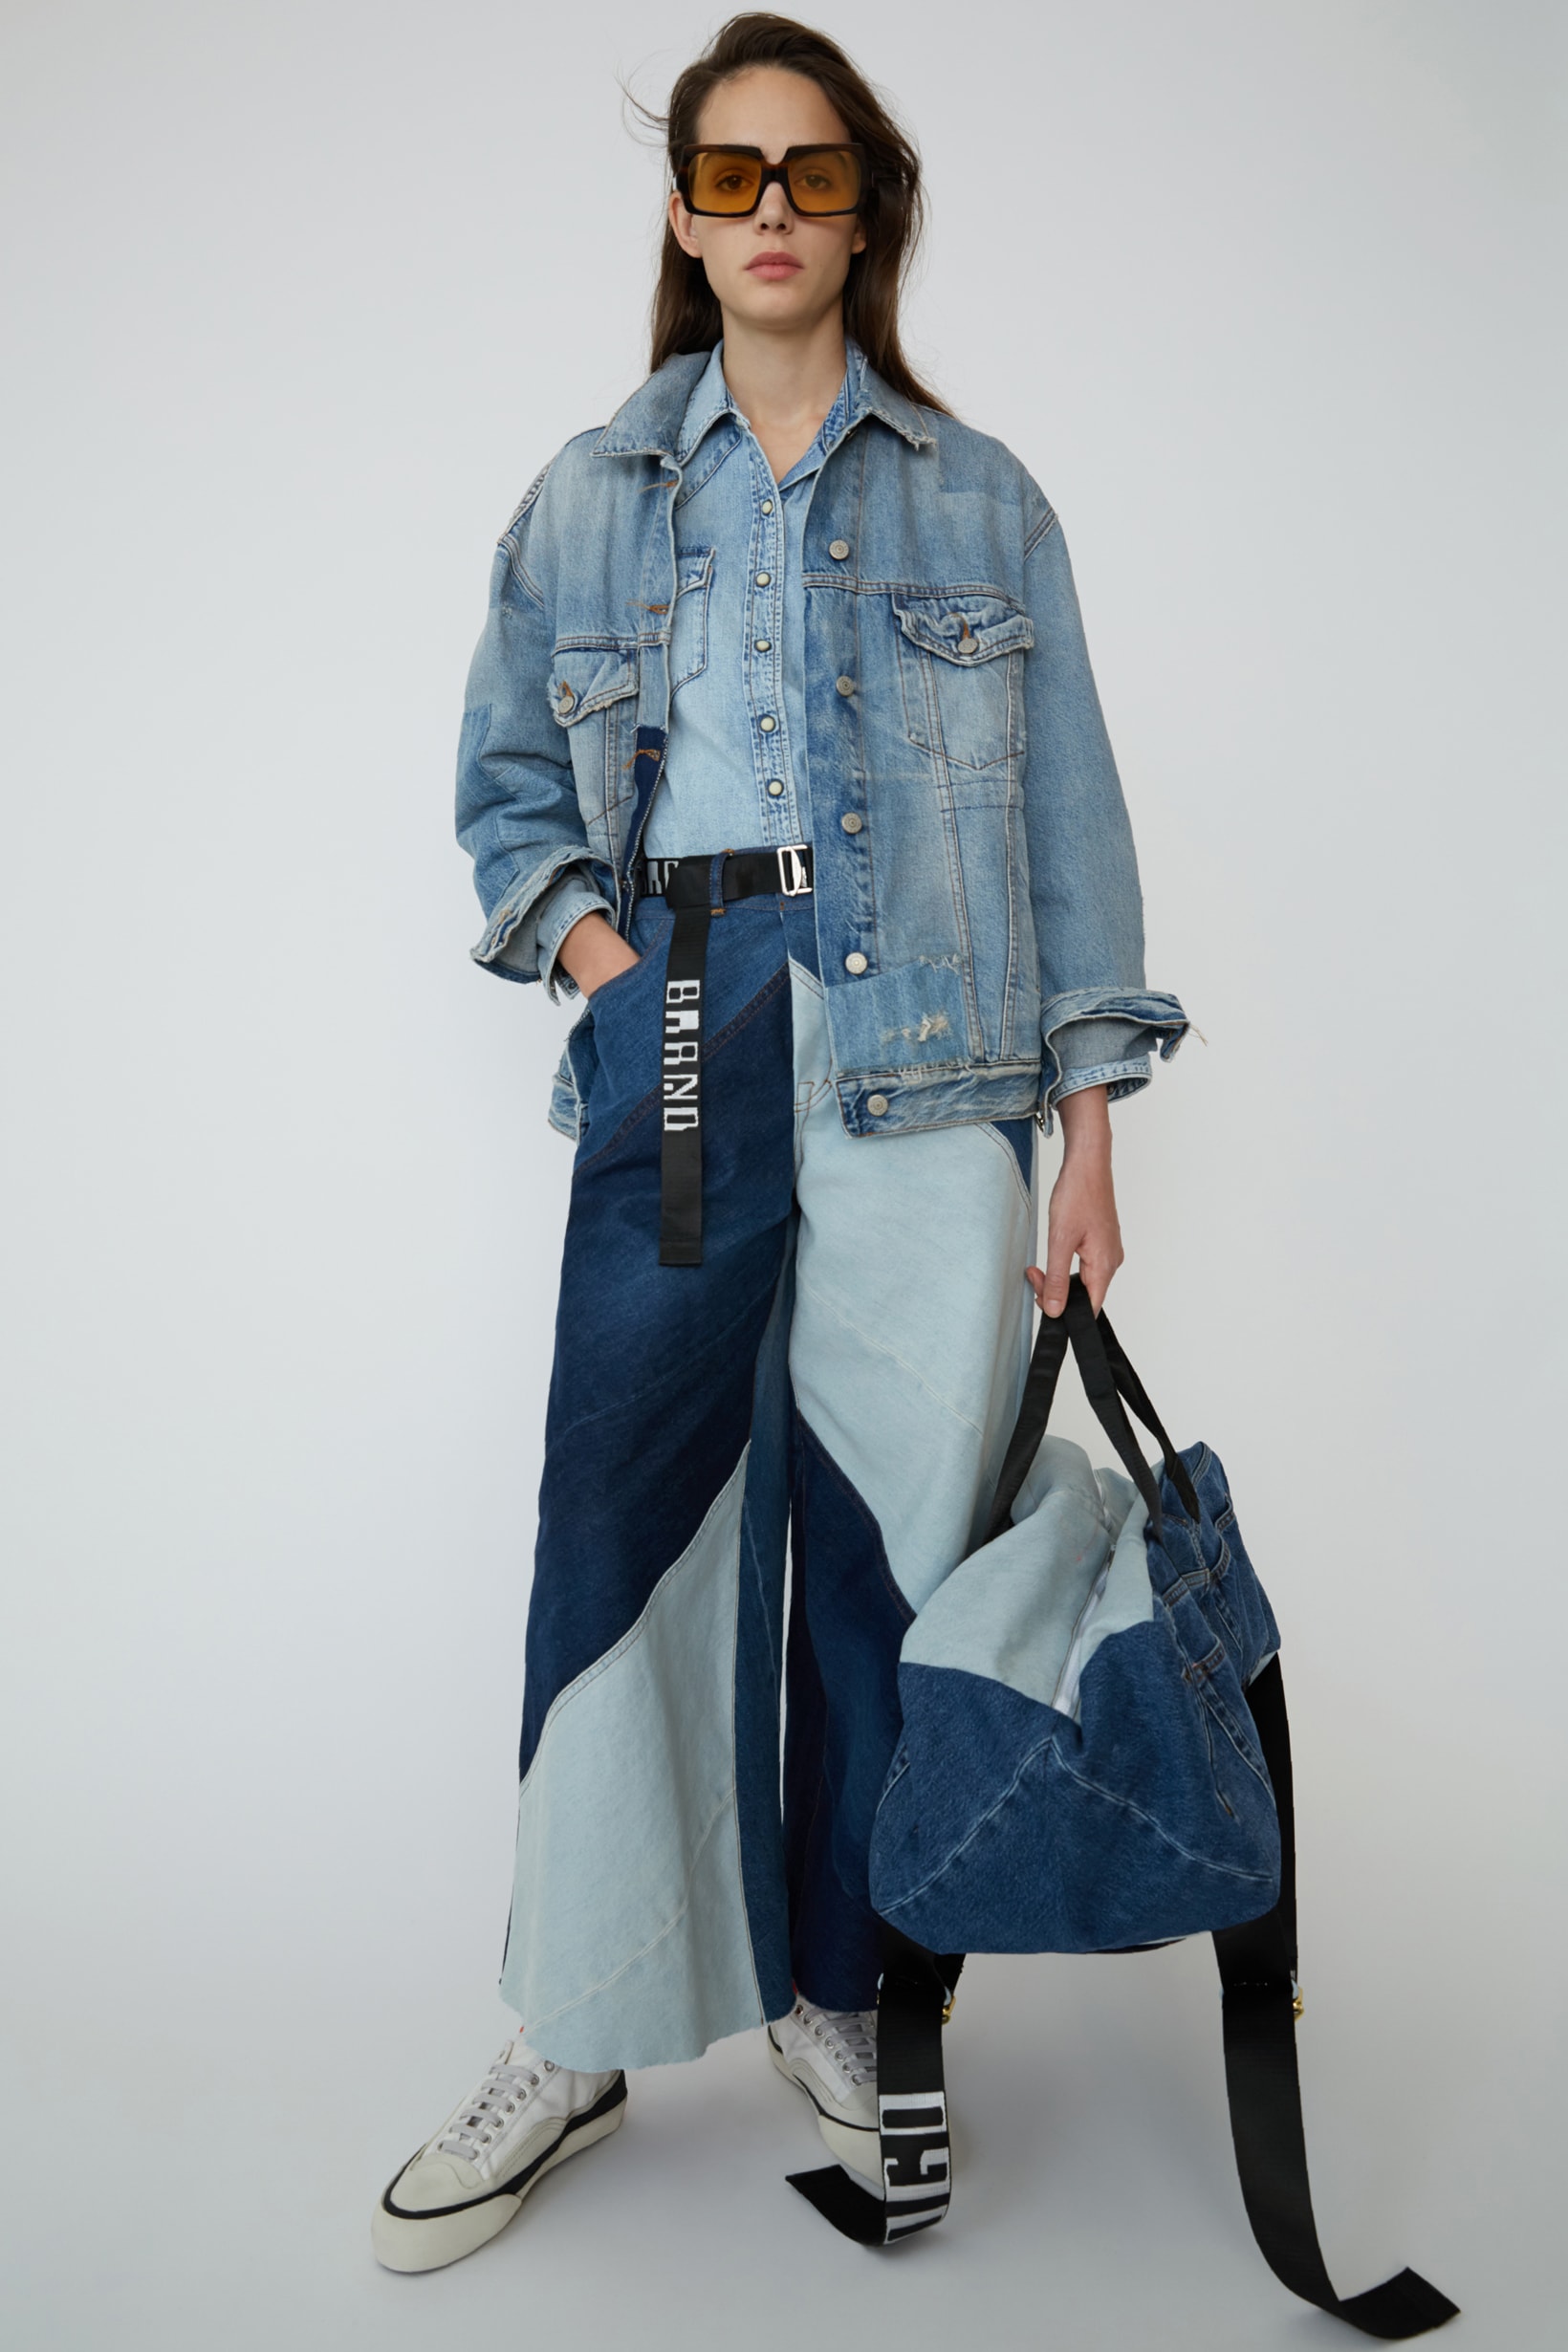 Acne Studios Spring Summer 2019 Denim Collection Jacket Jeans Bag Blue